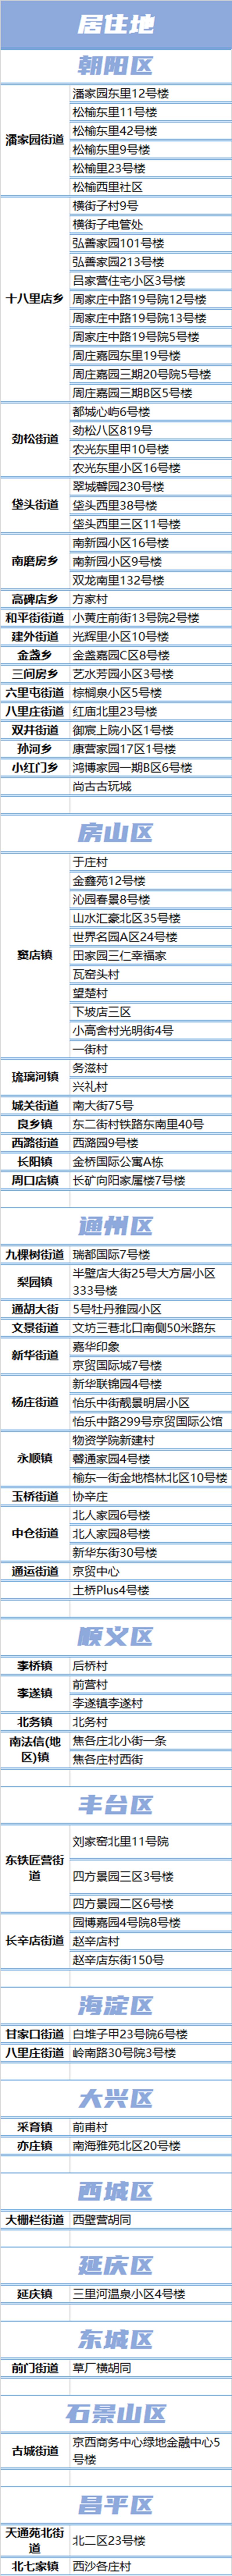 北京本轮疫情累计报告228例感染者 居住地工作地一览